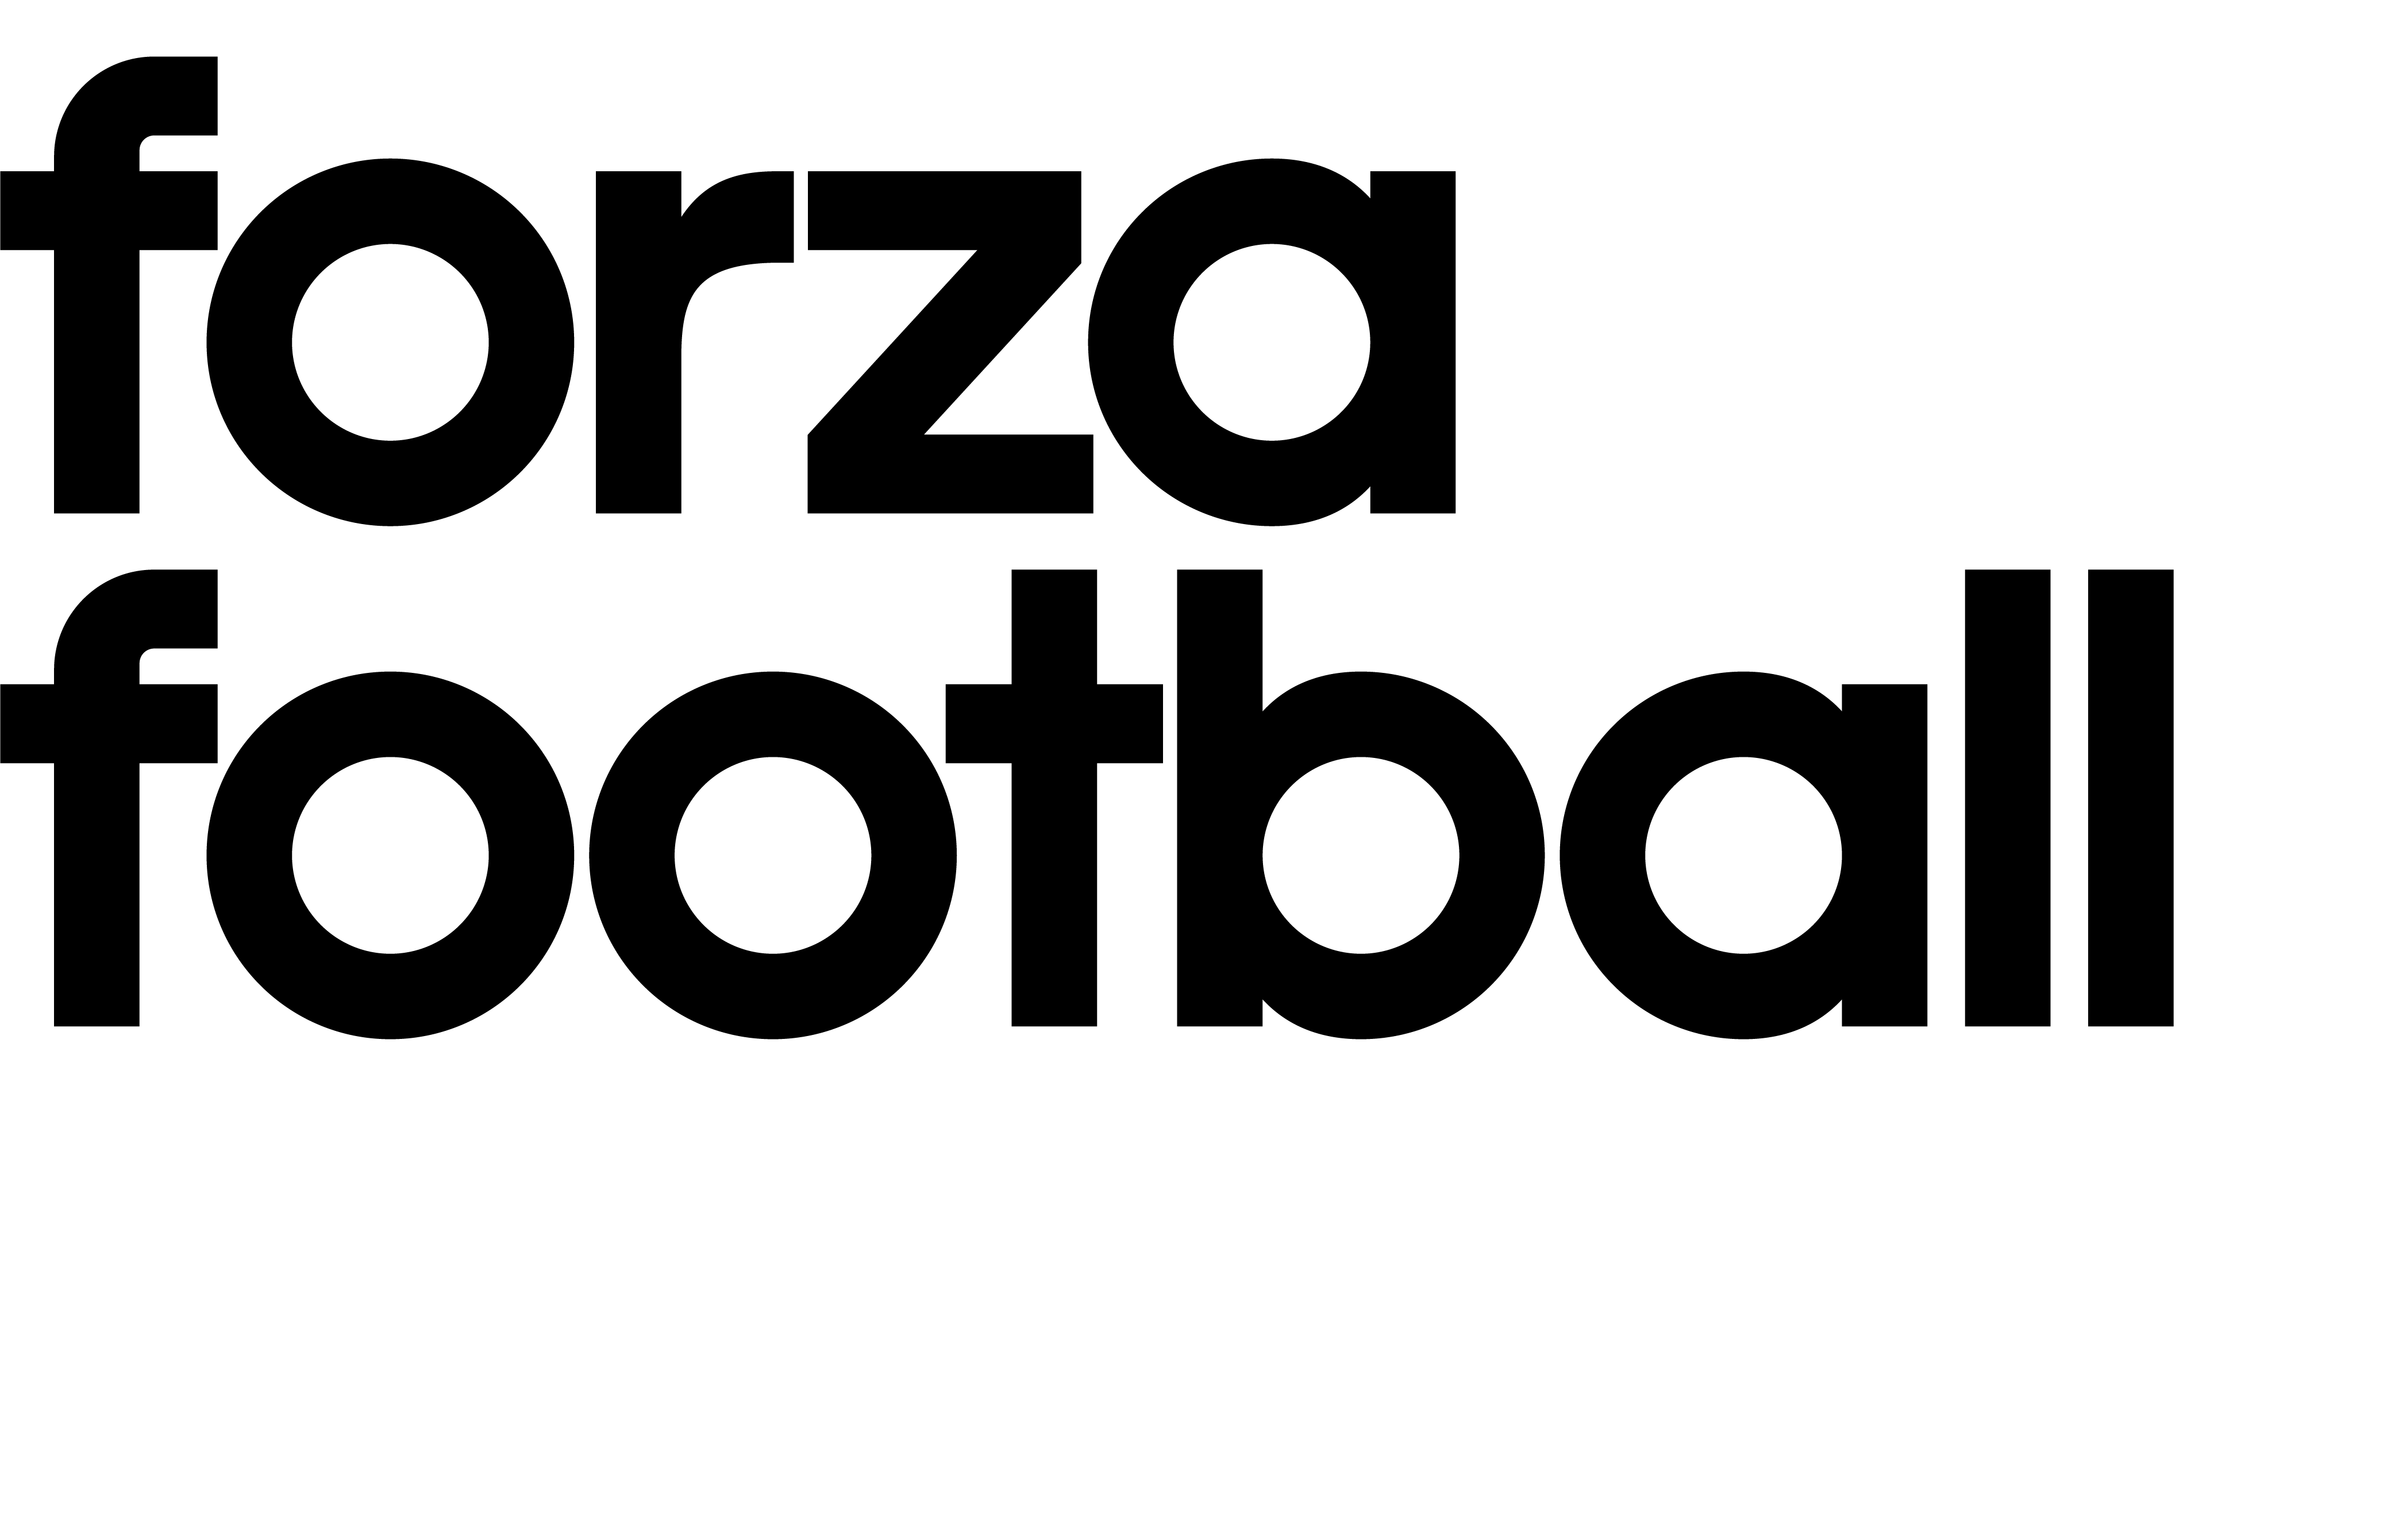 Black and White Football Logo - Forza Football